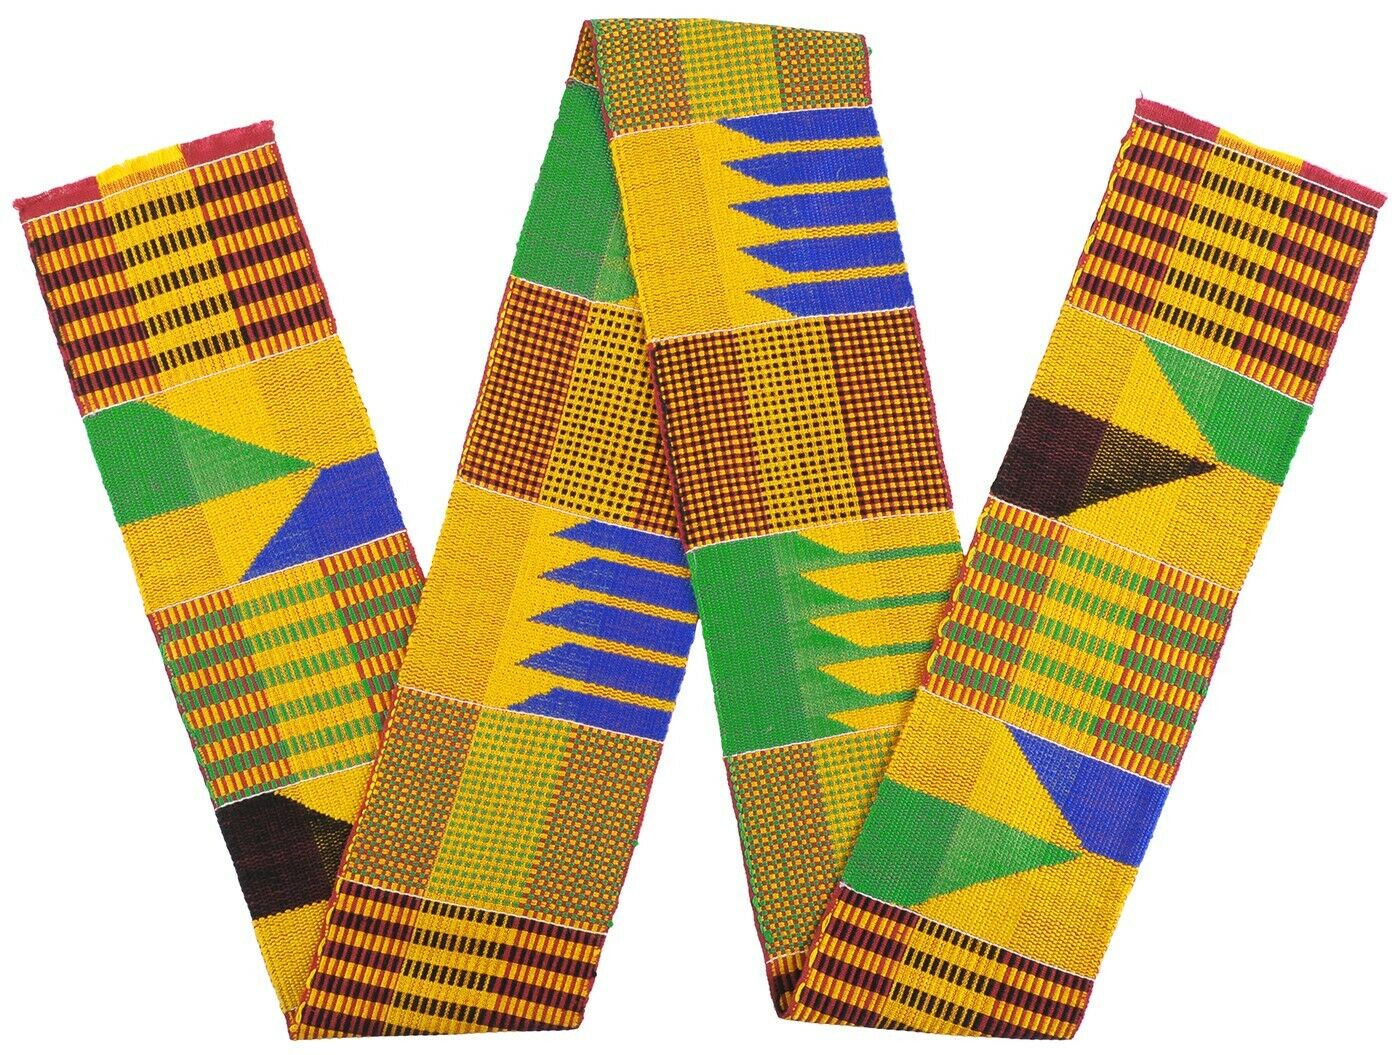 Authentischer Kente handgewebter afrikanischer Tuch Schal Schärpe Stola Stoff Ghana - Tribalgh